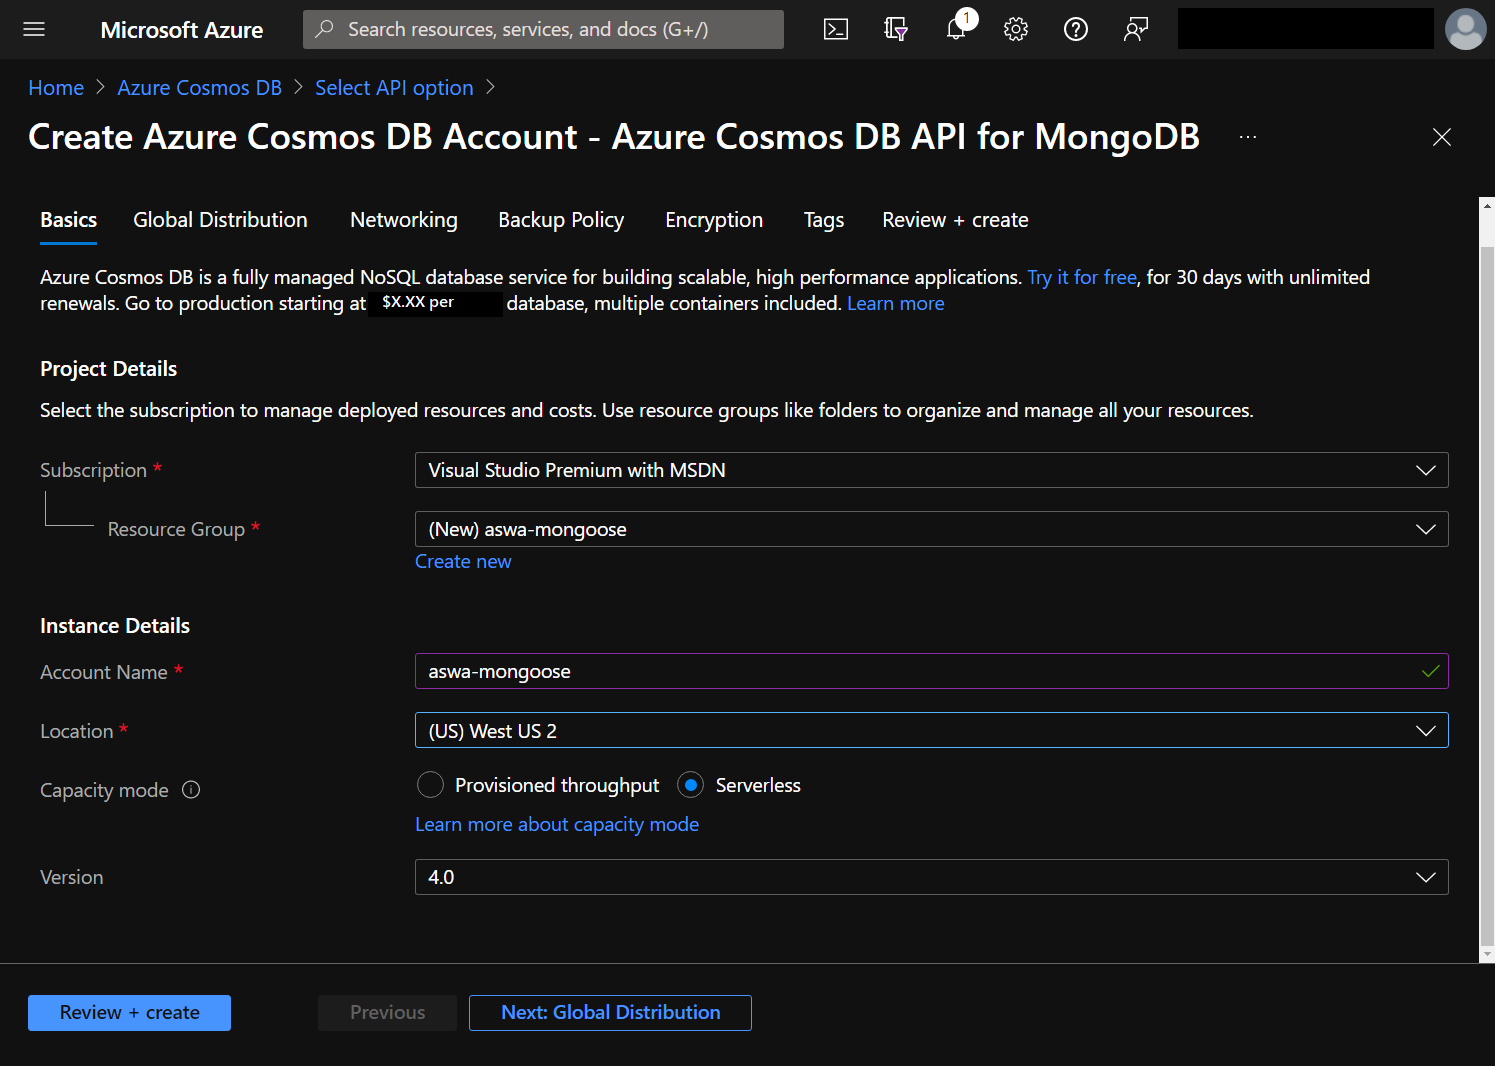 Captura de pantalla que muestra el formulario para la creación de una nueva instancia de Cosmos DB.